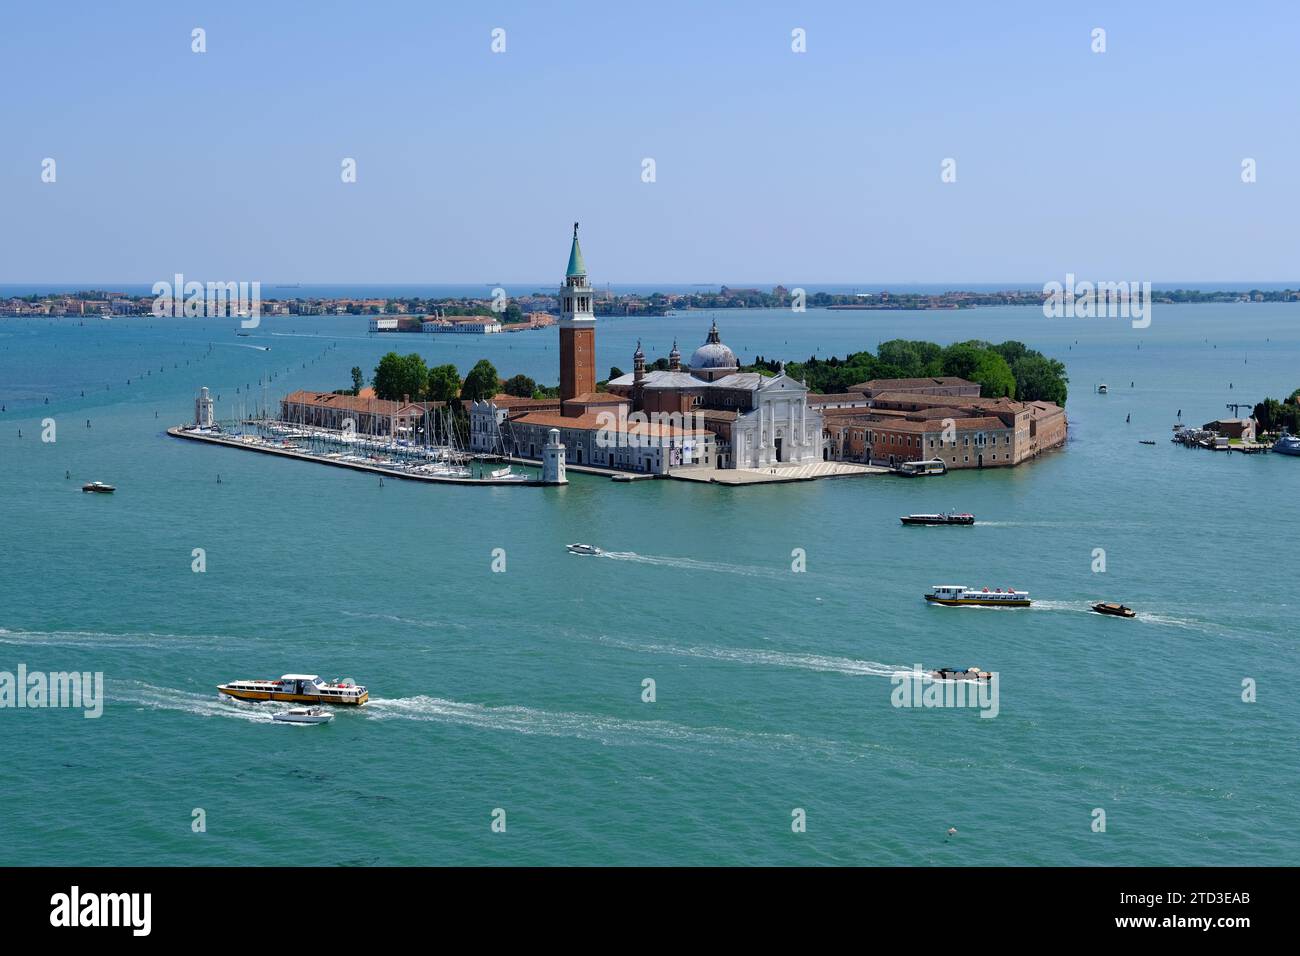 Venise Italie - vue de la tour de la cathédrale Campanile Saint-Marc sur l'île San Giorgio Maggiore Banque D'Images